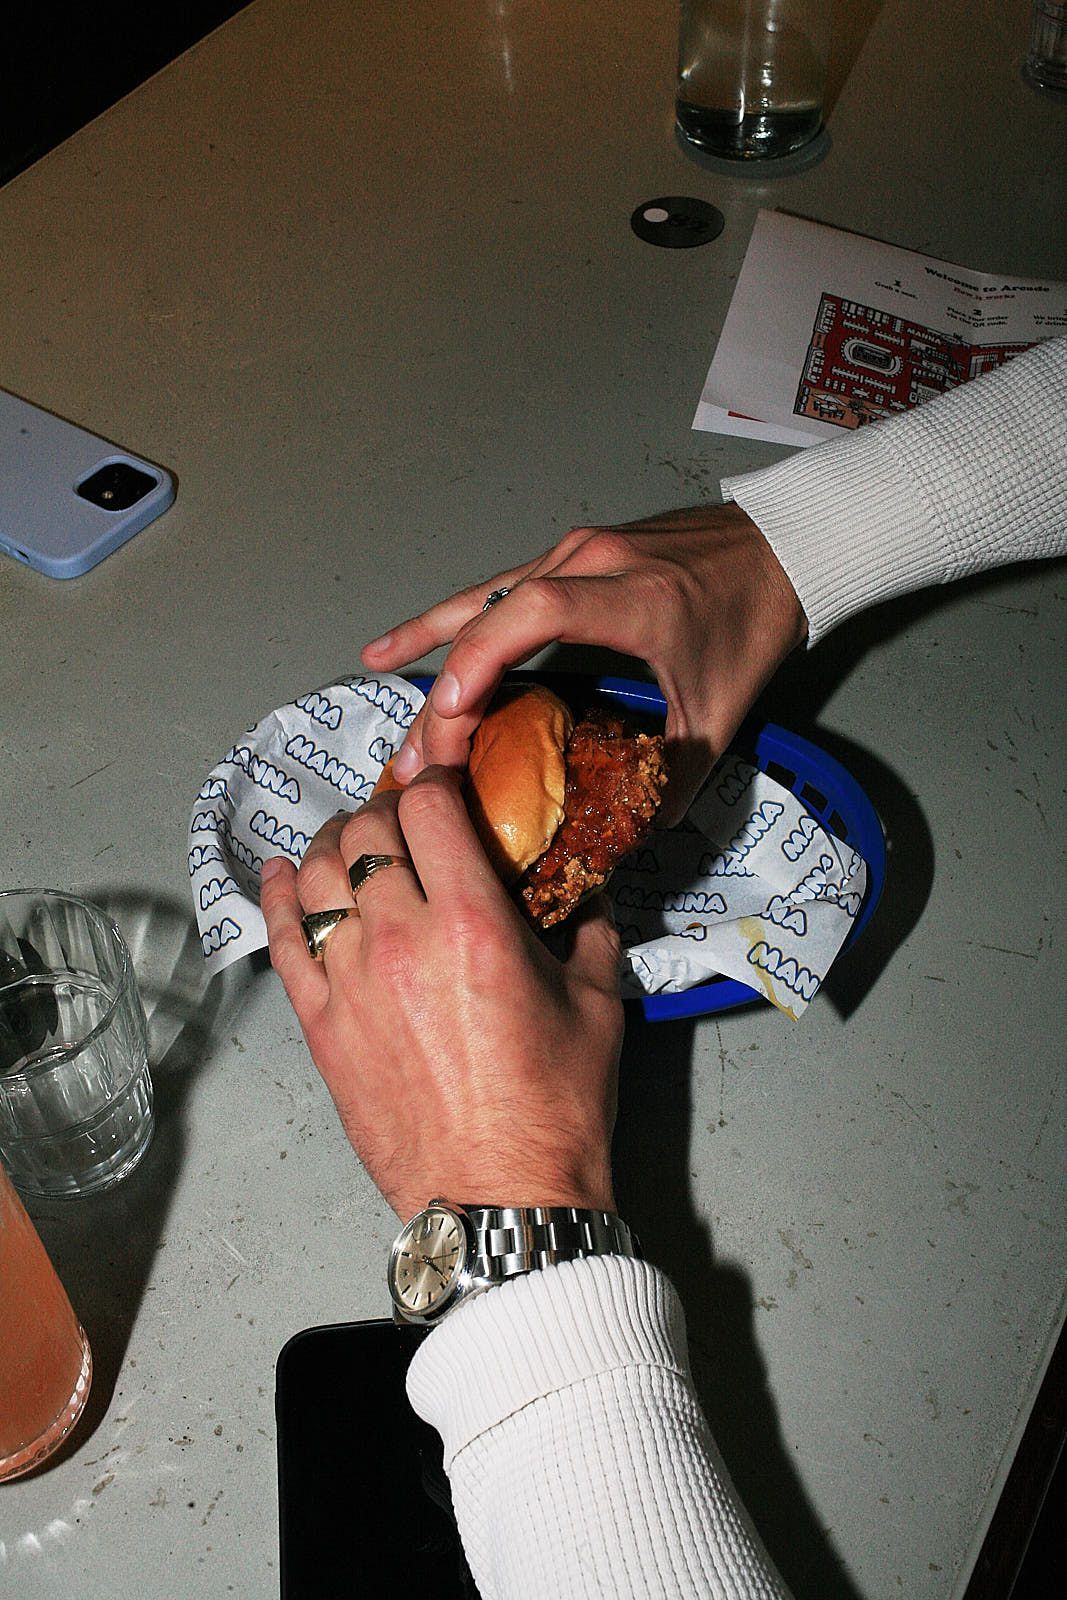 A Nashville hot chicken burger in a diner-style blue basket